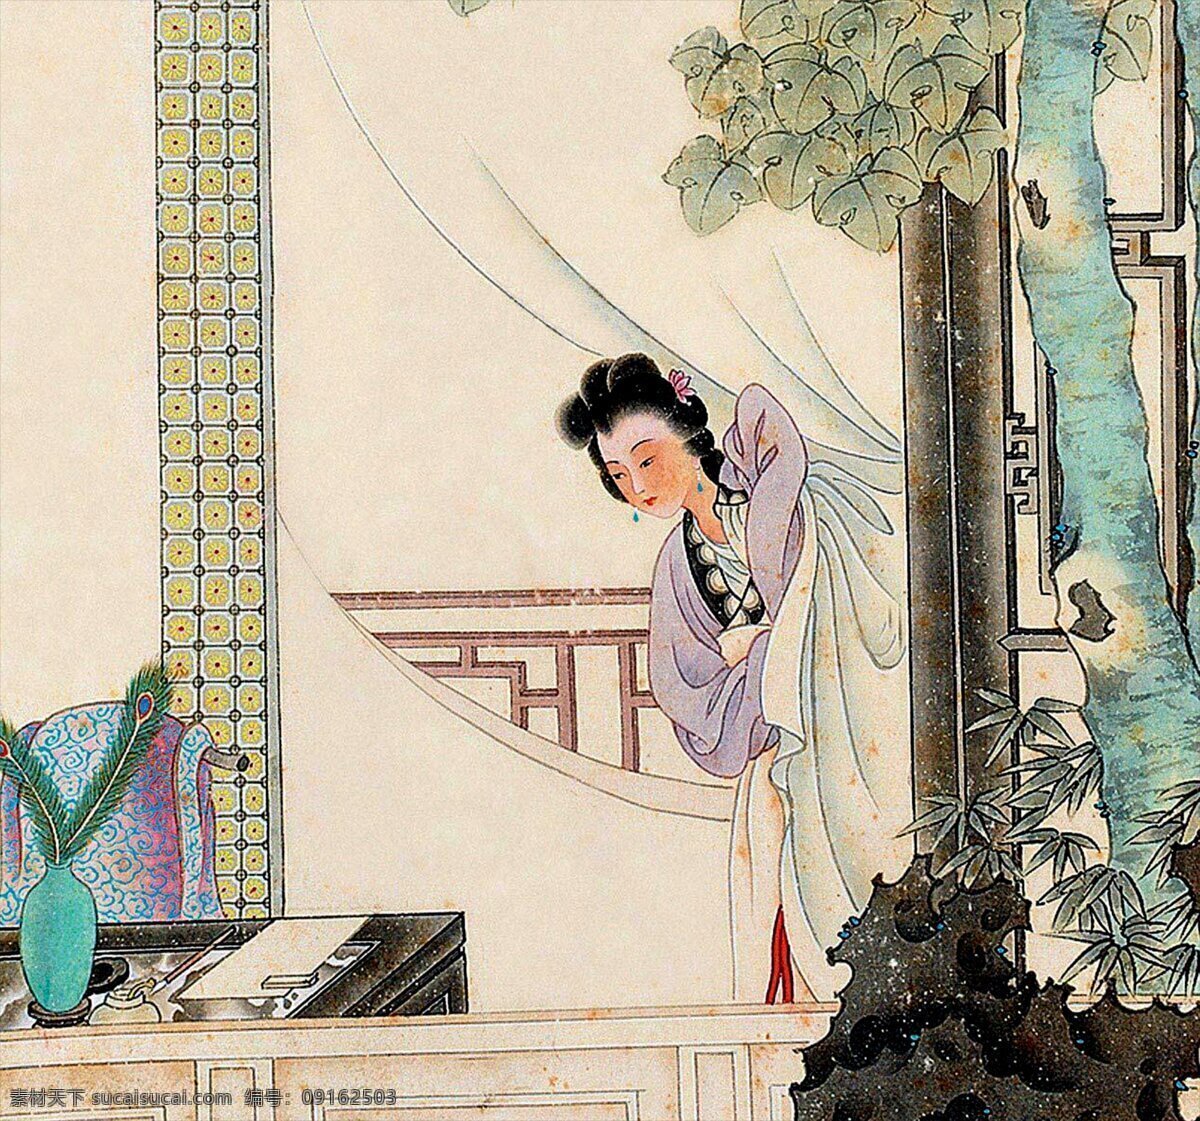 古典仕女 仕女 古装 古装美女 水墨 彩墨 工笔画 白描 传统绘画 国画 中国画 传统画 绘画 绘画图文